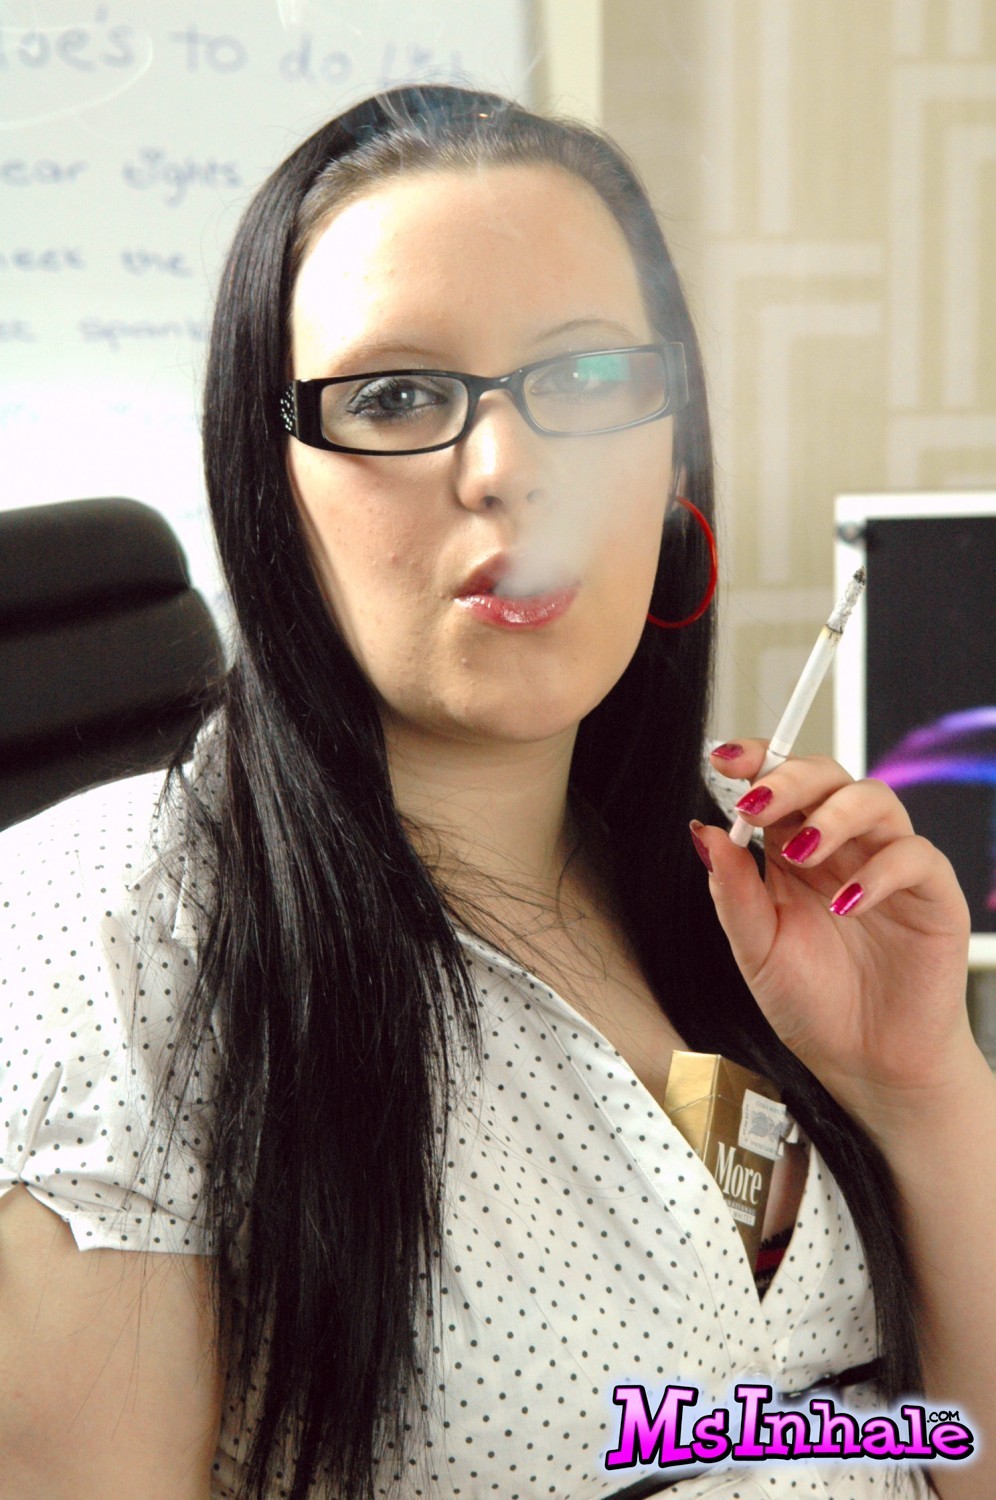 Teen Sekretärin mit Brille raucht eine mehr 120 Zigarette bei der Arbeit
 #70269206